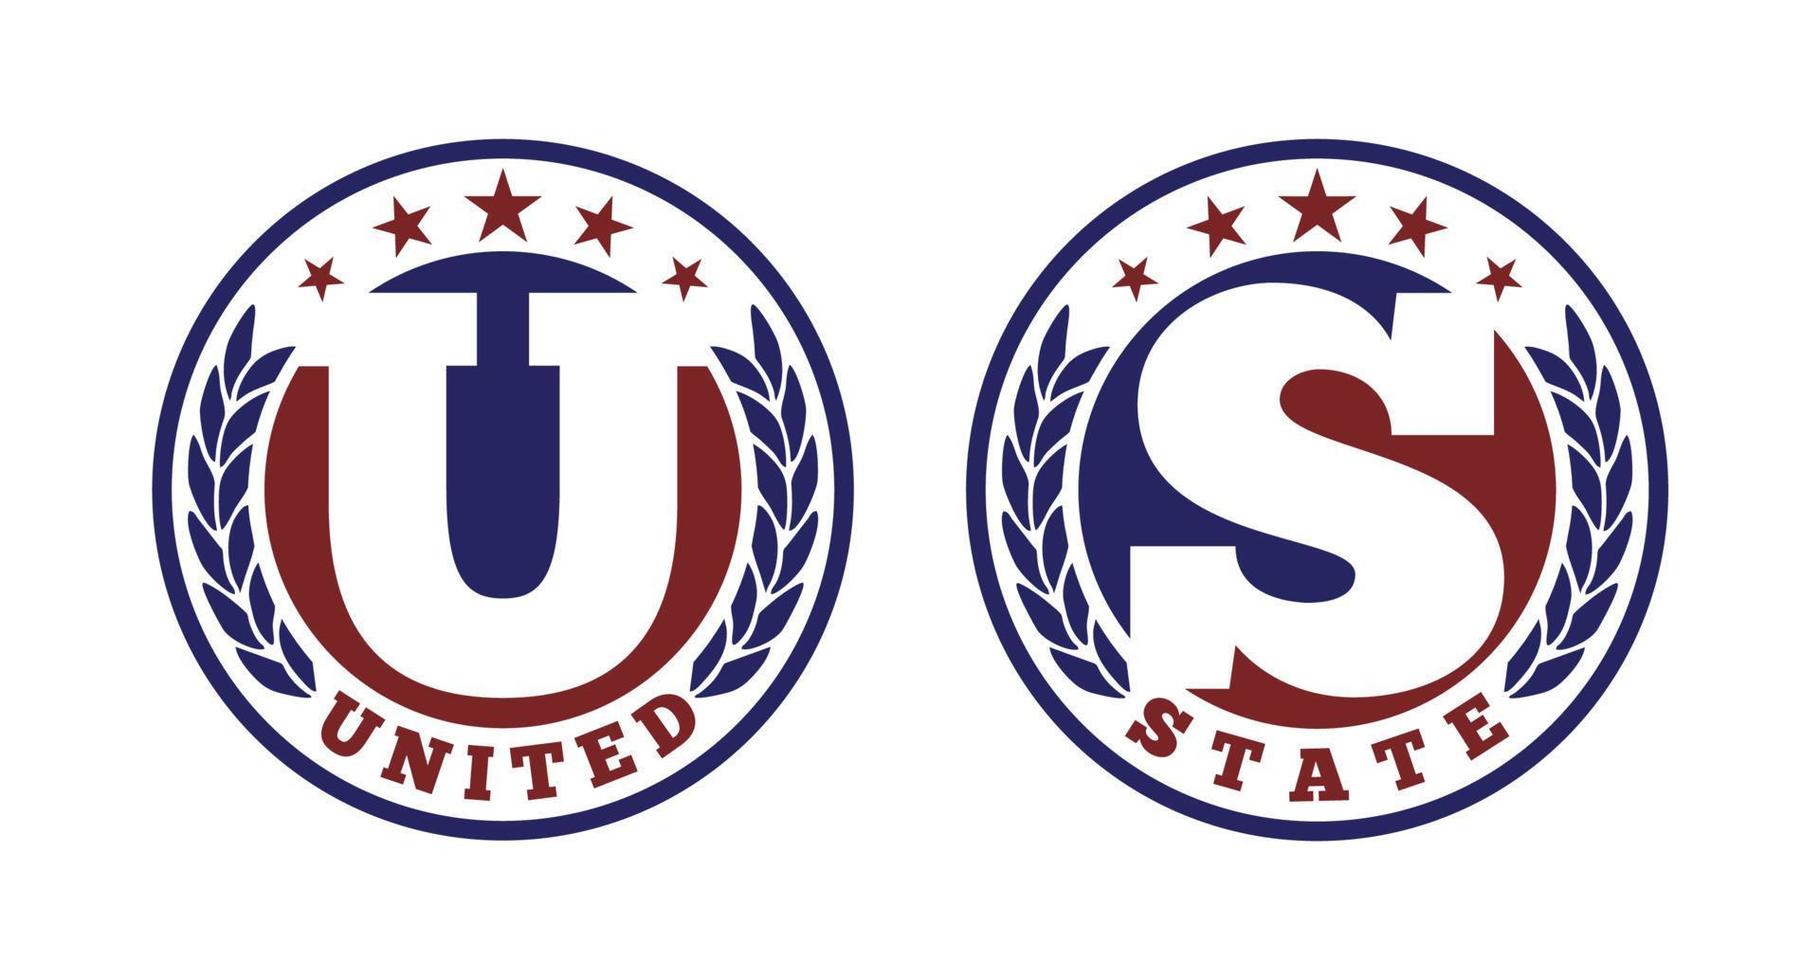 Initial Letter U S Unites State Medal Coins with Laurel Wreath Emblem Badge Logo design vector